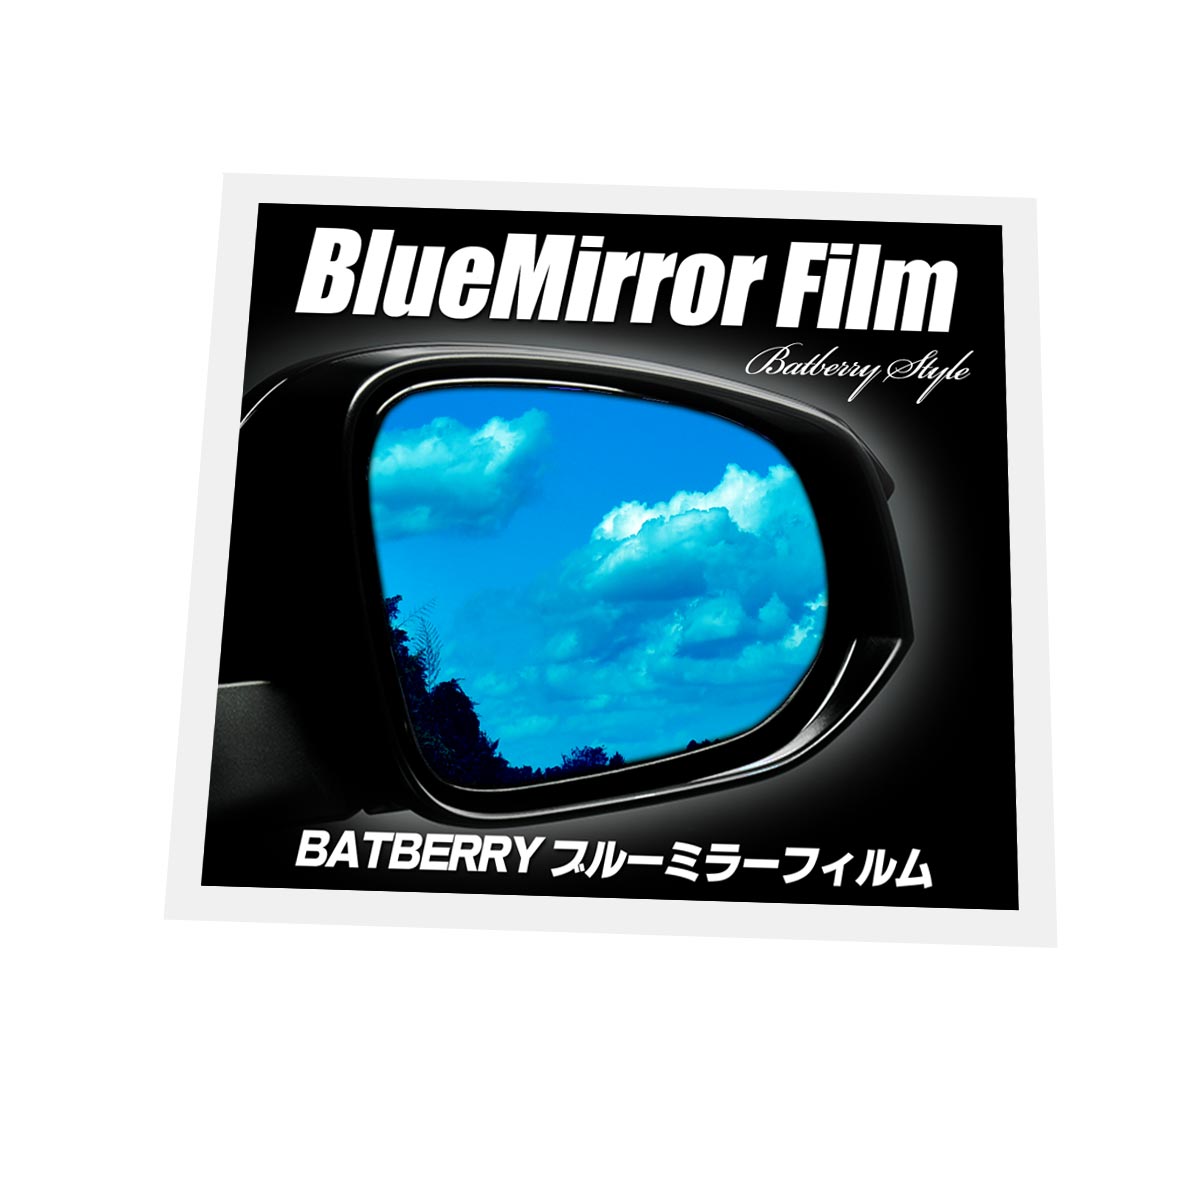 BATBERRY ブルーミラーフィルム ダイハツ タント L350S/L360S 前期用 左右セット【ポイント消化】 オートパーツ  フジプランニング